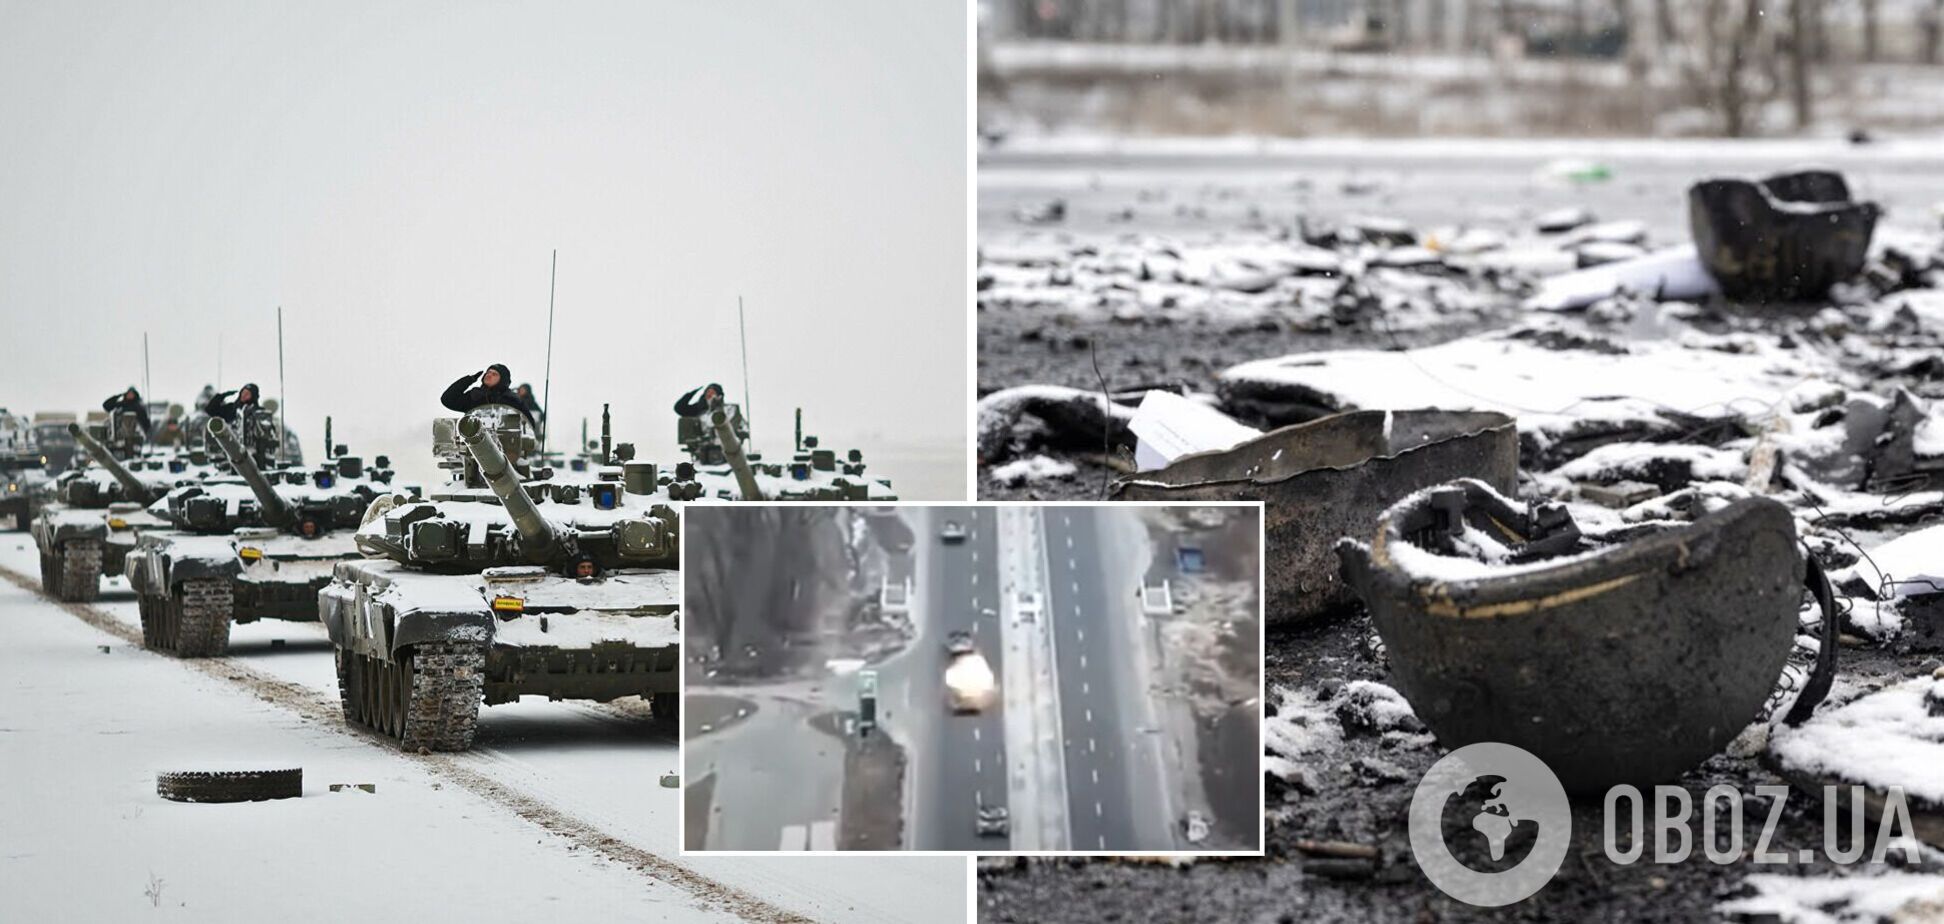 Украинские защитники встретили огнем колонну танков, идущую на Киев. Видео